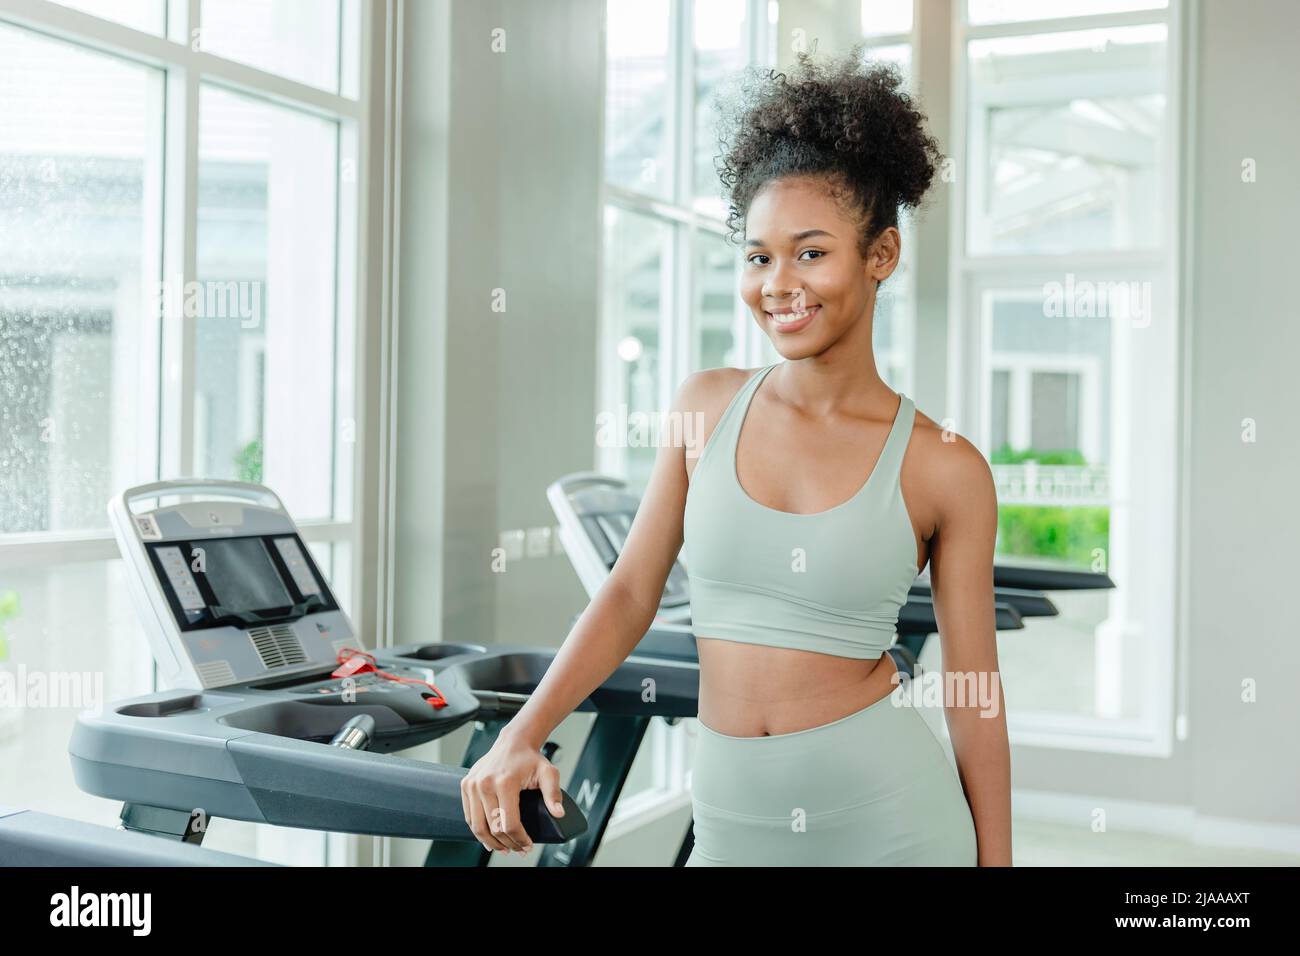 portrait bonne santé jeune adolescente noire femme dans le club de sport fitness sourire heureux.soins de santé fille exercice d'entraînement. Banque D'Images